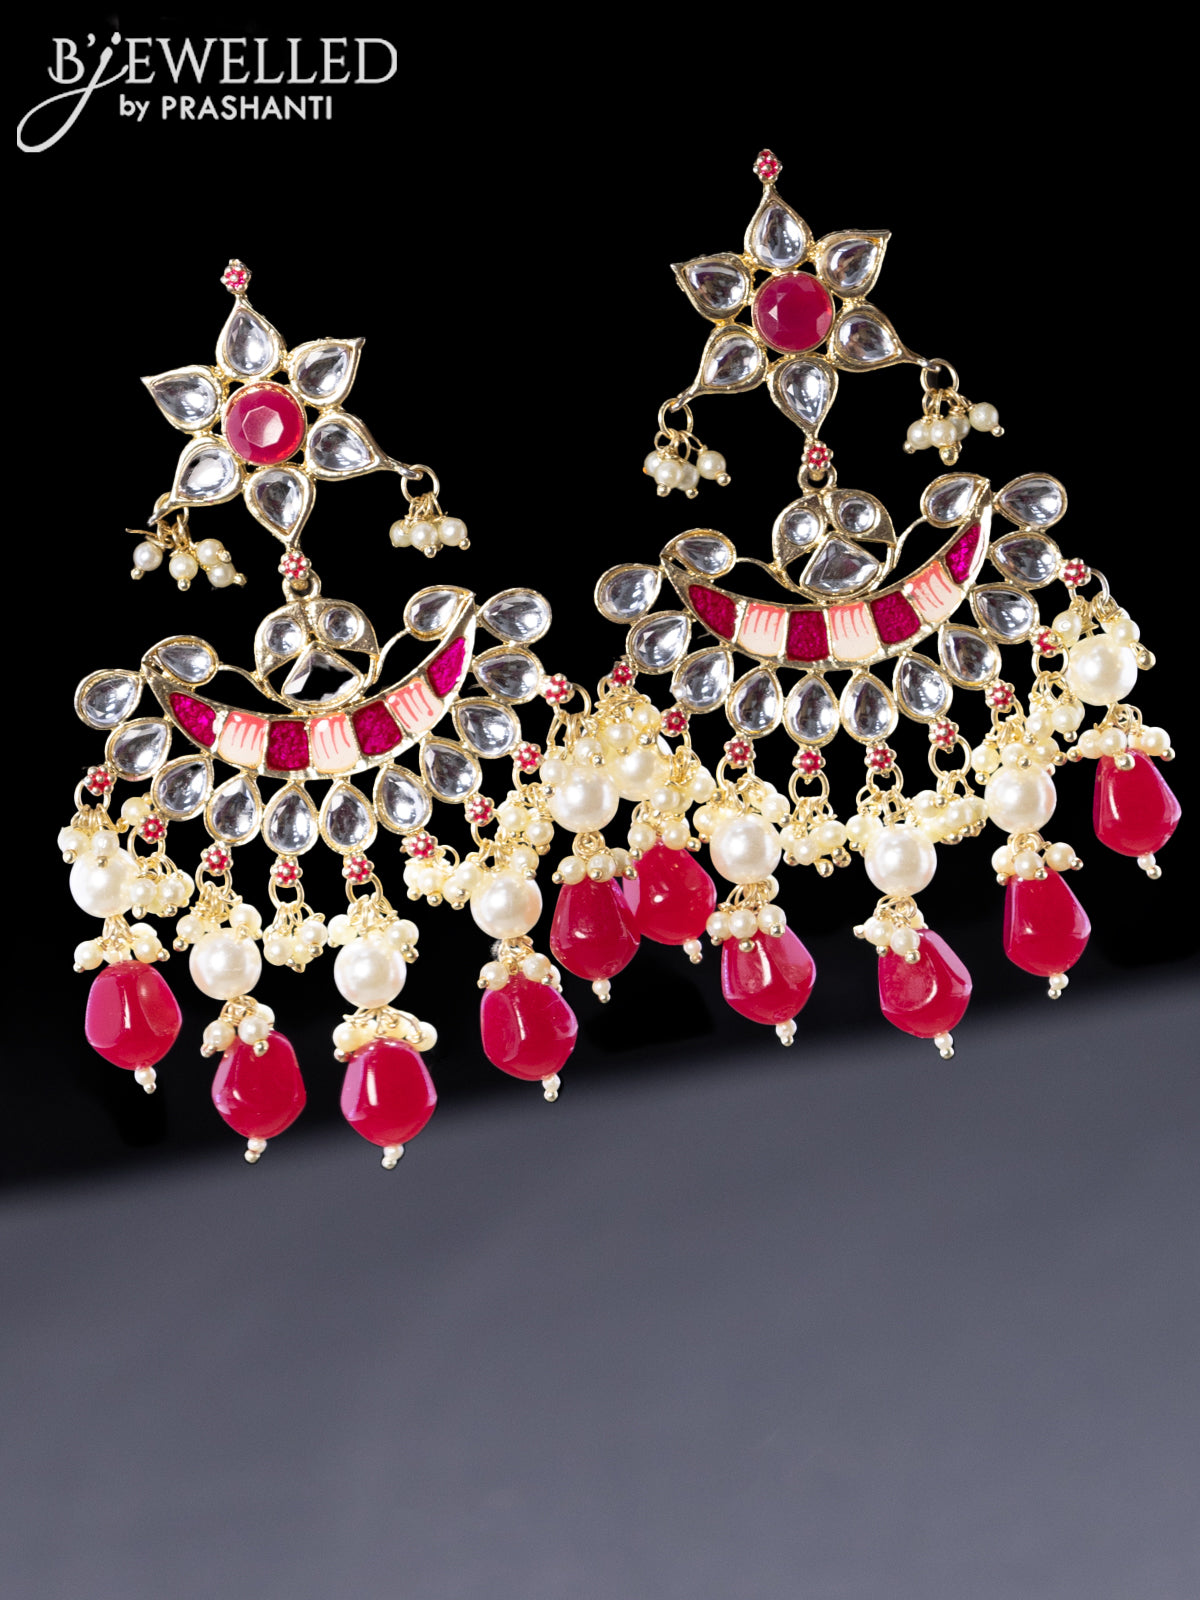 Buy Fuchsia Earrings, Hot Pink Dangle Earrings, Fuchsia Rhinestone Earrings,  Fuchsia Pageant Earrings Online in India - Etsy